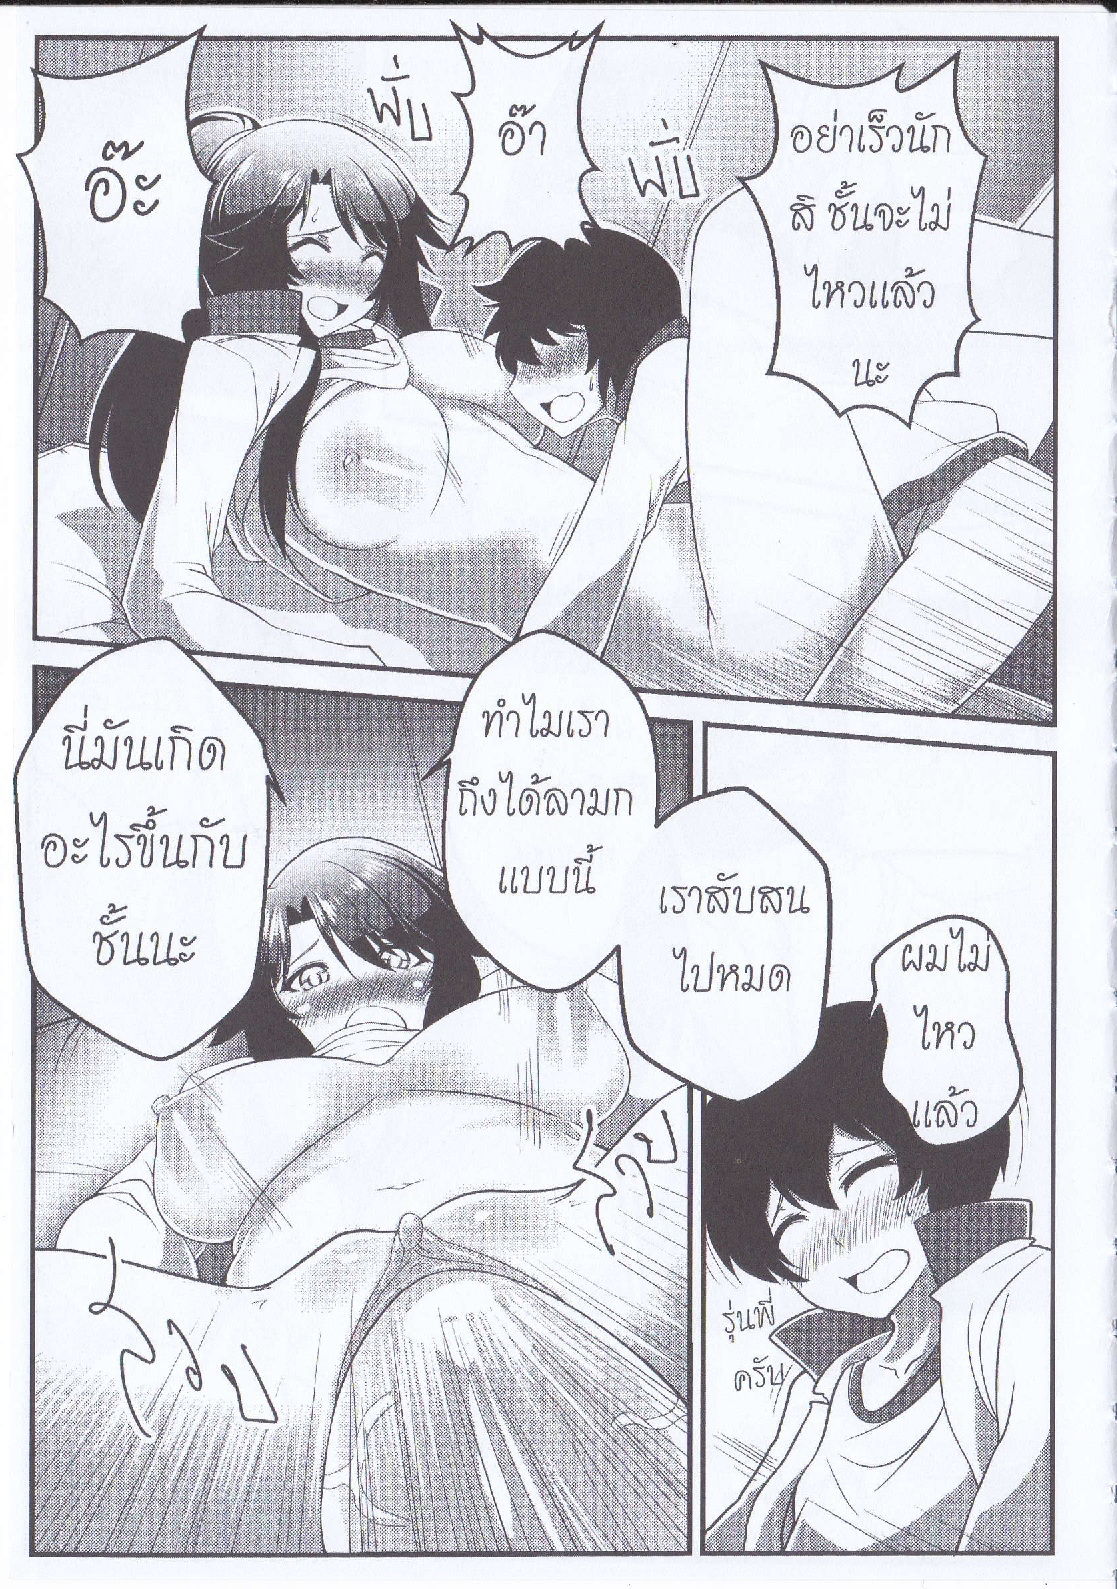 Orgasium Comics(Thai) Vol.4 